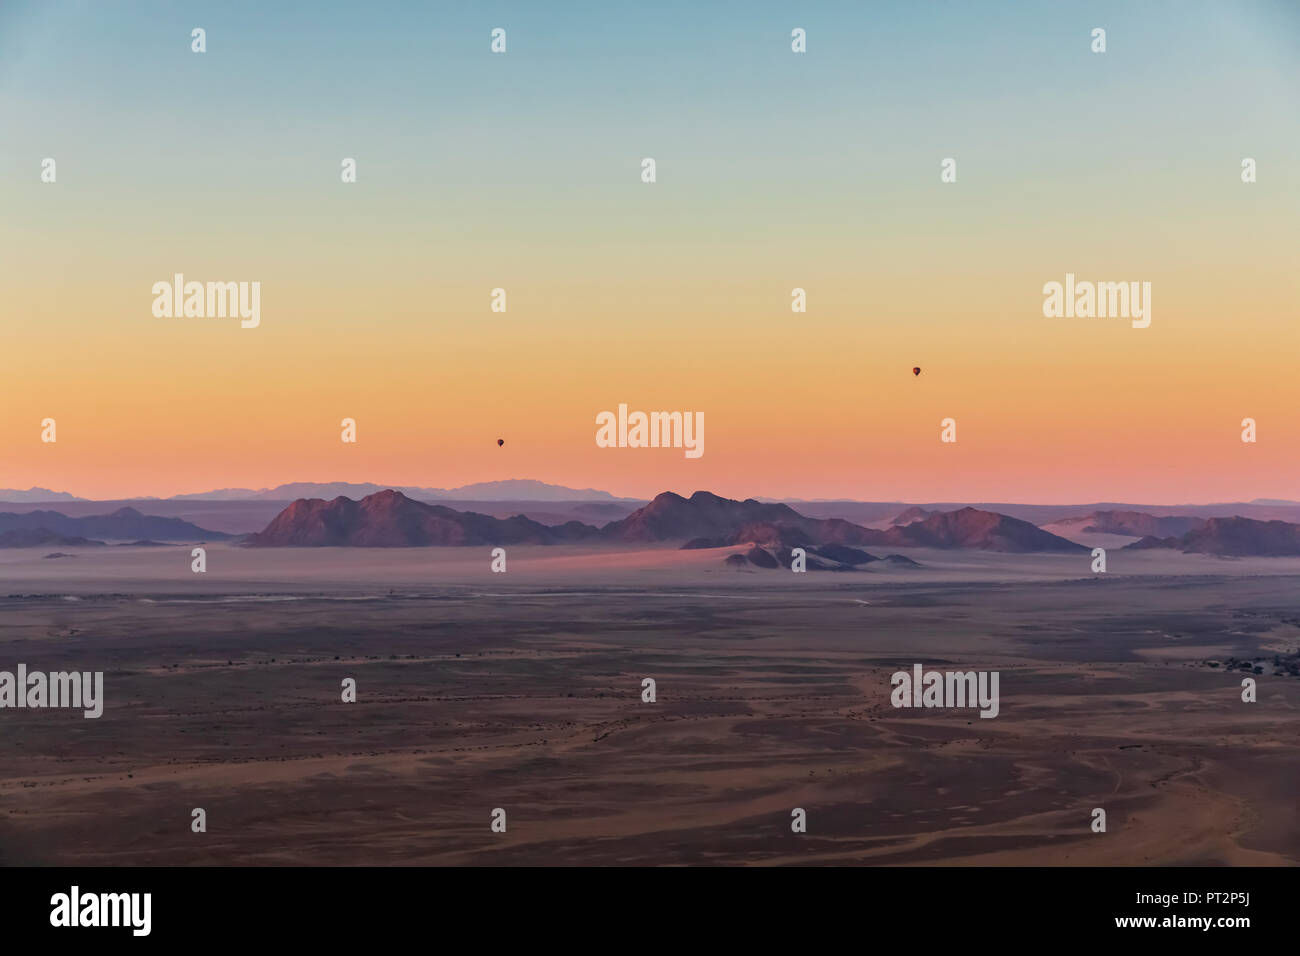 Afrika, Namibia, die Wüste Namib, Namib-Naukluft-Nationalpark, Luftaufnahme von Dünen der Wüste am Morgen Licht, Luft Ballons Stockfoto